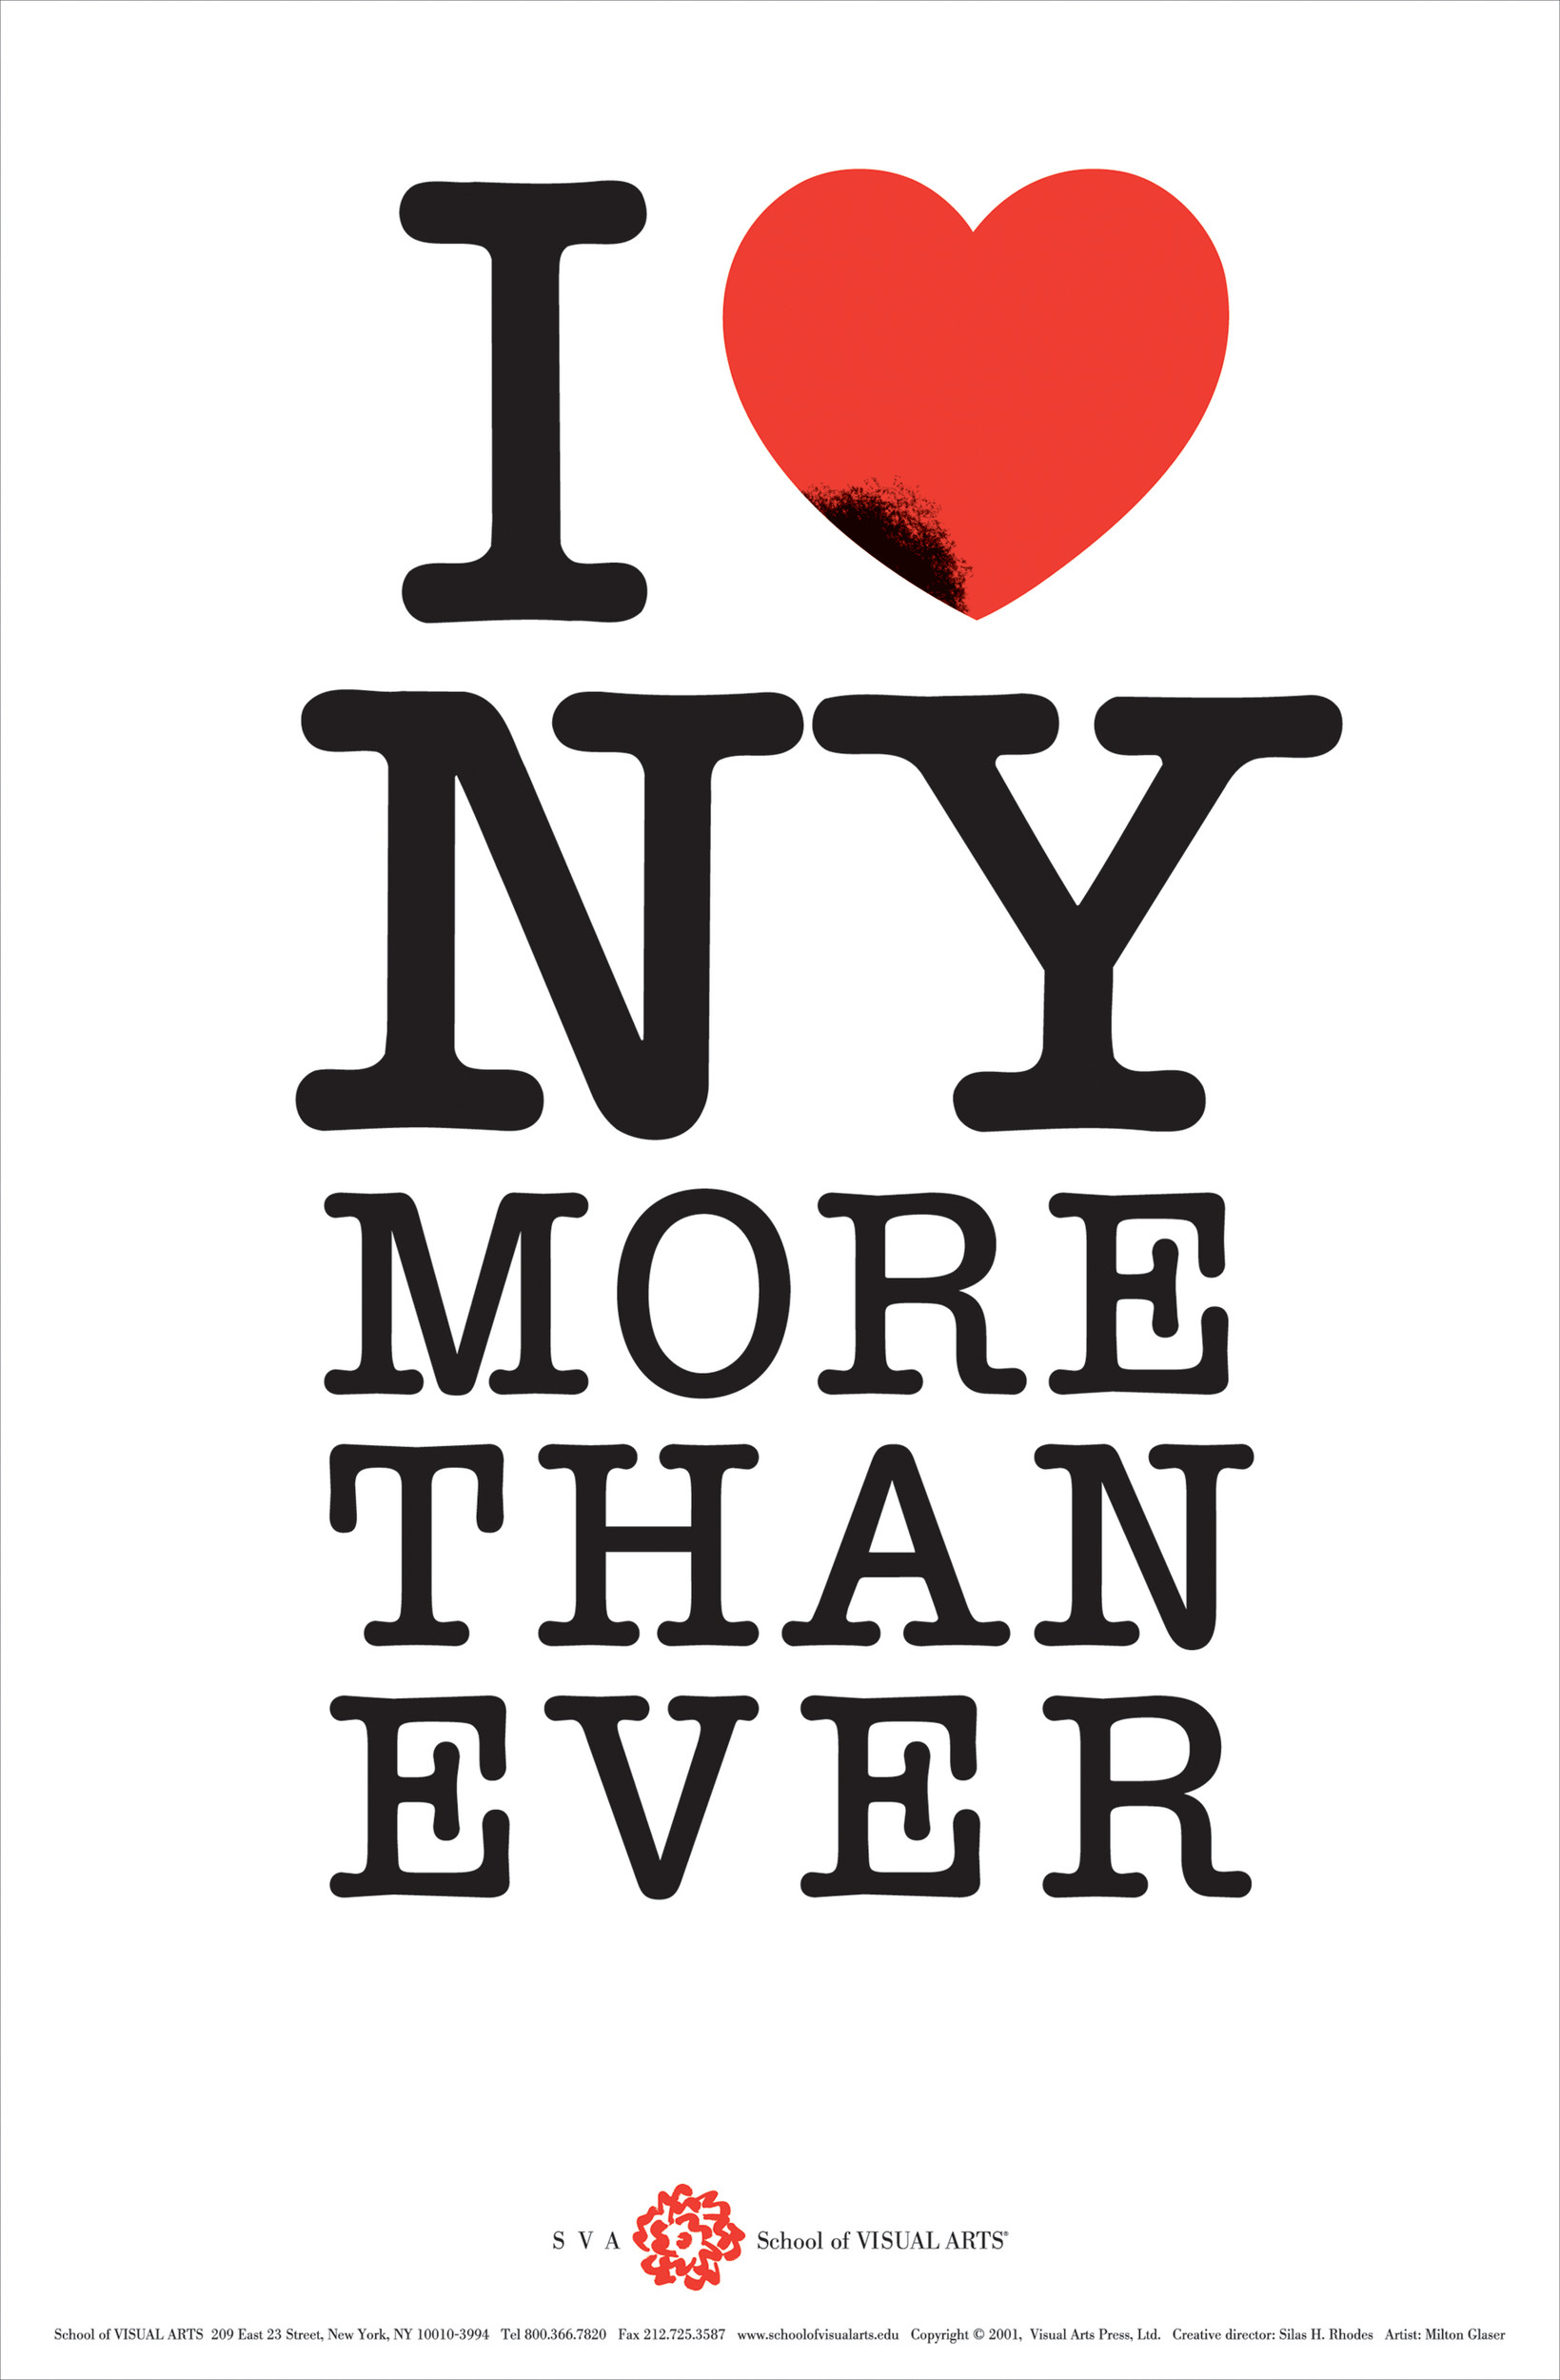 我爱纽约logo图片